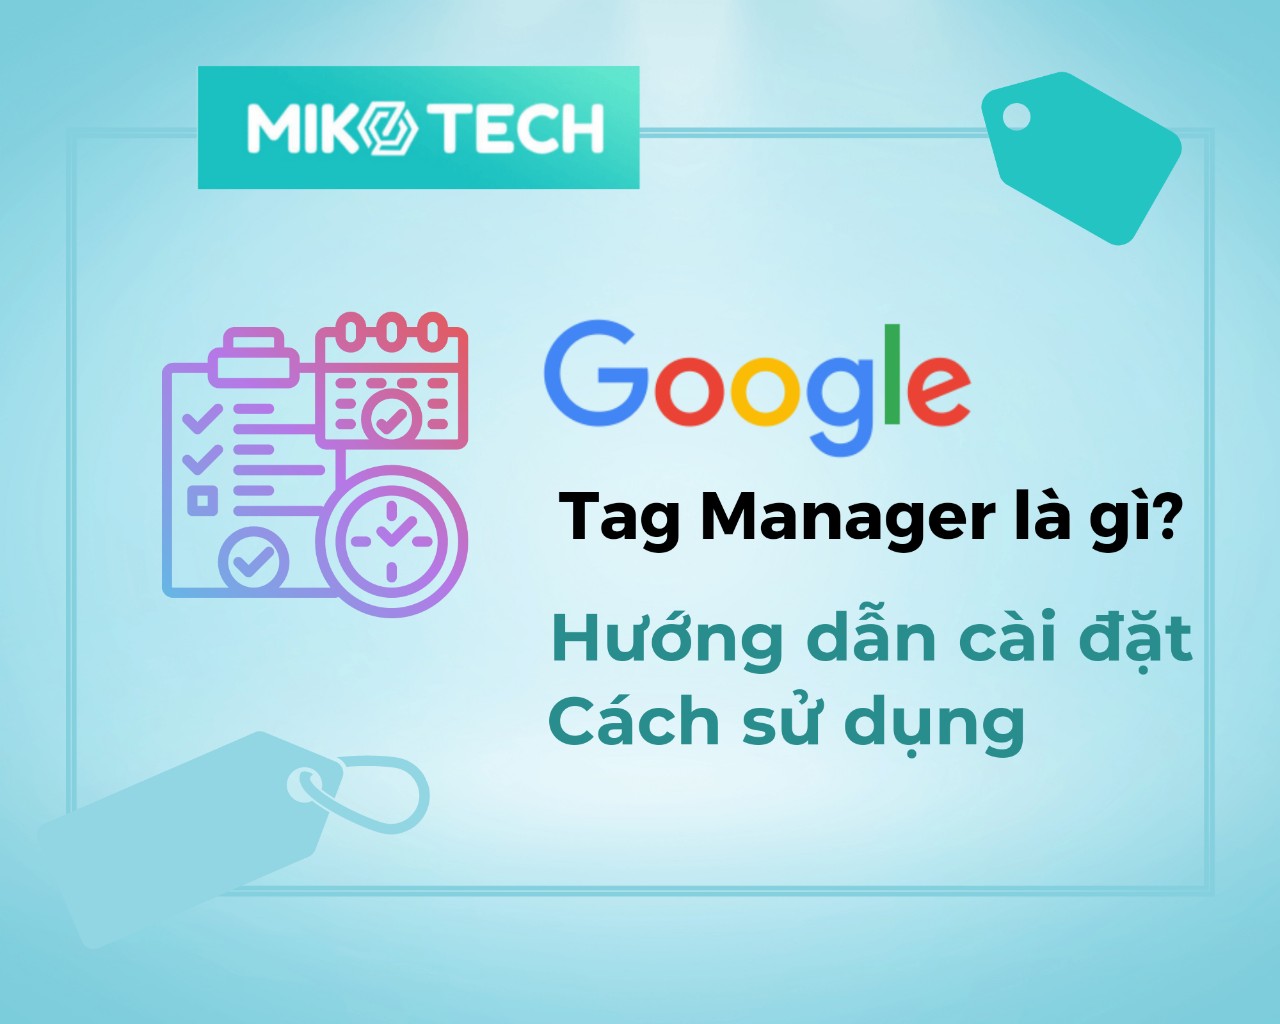 Google Tag Manager là gì? Hướng dẫn sử dụng GTM từ A đến Z